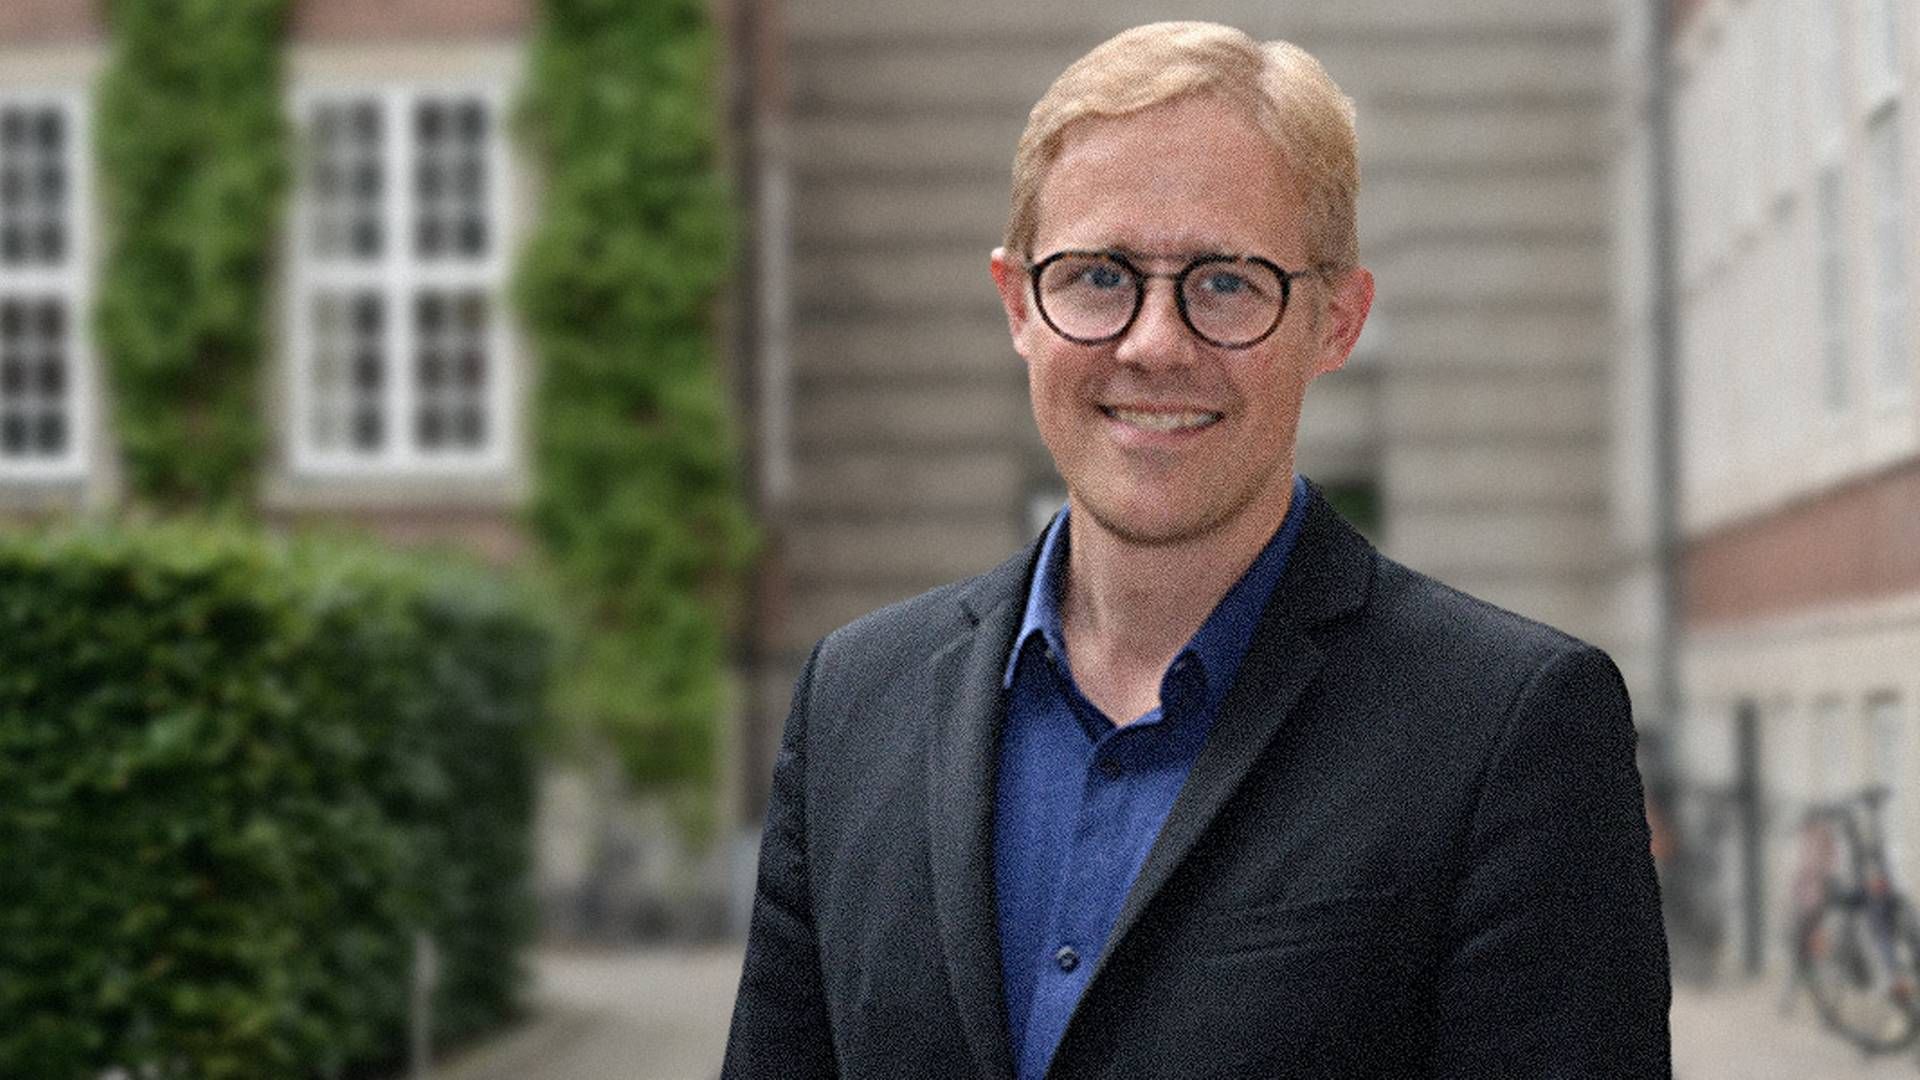 Andreas Blohm Graversen er sansat som ny vicedirektør for innovation og erhvervssamarbejde i Københavns Universitet. | Foto: Københavns Universitet / Pr